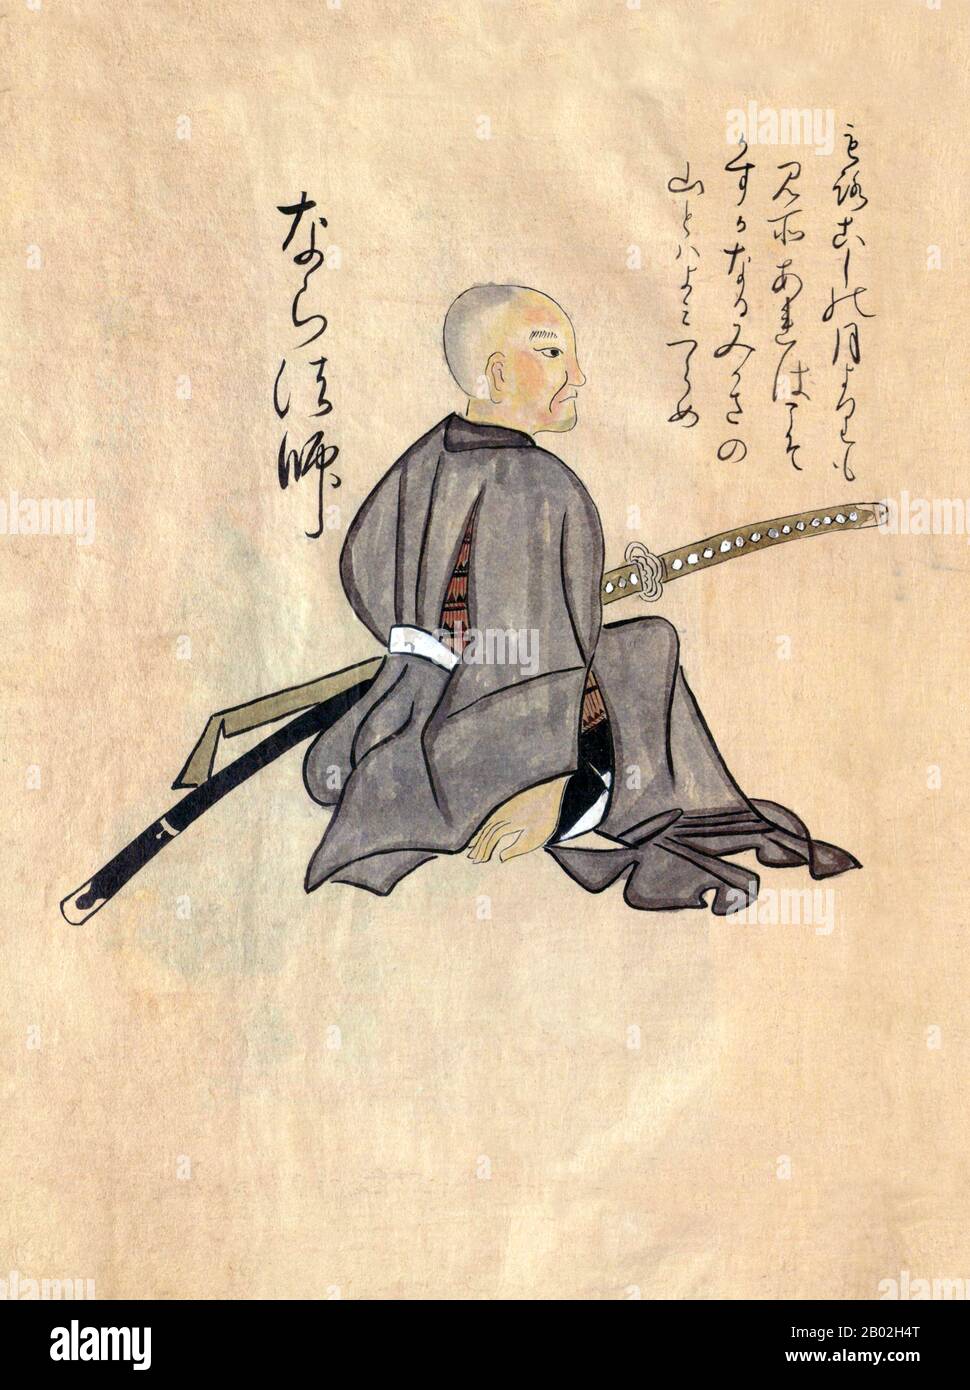 Japon: Artisanat et métiers traditionnels du 18th siècle d'un album peint à la main. Folio 68: Un guerrier, peut-être un shinobi mercenaire, portant une armure dissimulée et armé de katana et d'épées de wakizashi. Illustration colorée à la main d'une miscellane japonaise sur les métiers, l'artisanat et les coutumes traditionnels au milieu du 18th siècle au Japon, date de l'ère Meiwa (1764-1772) année 6 (c. 1770 ce). Banque D'Images